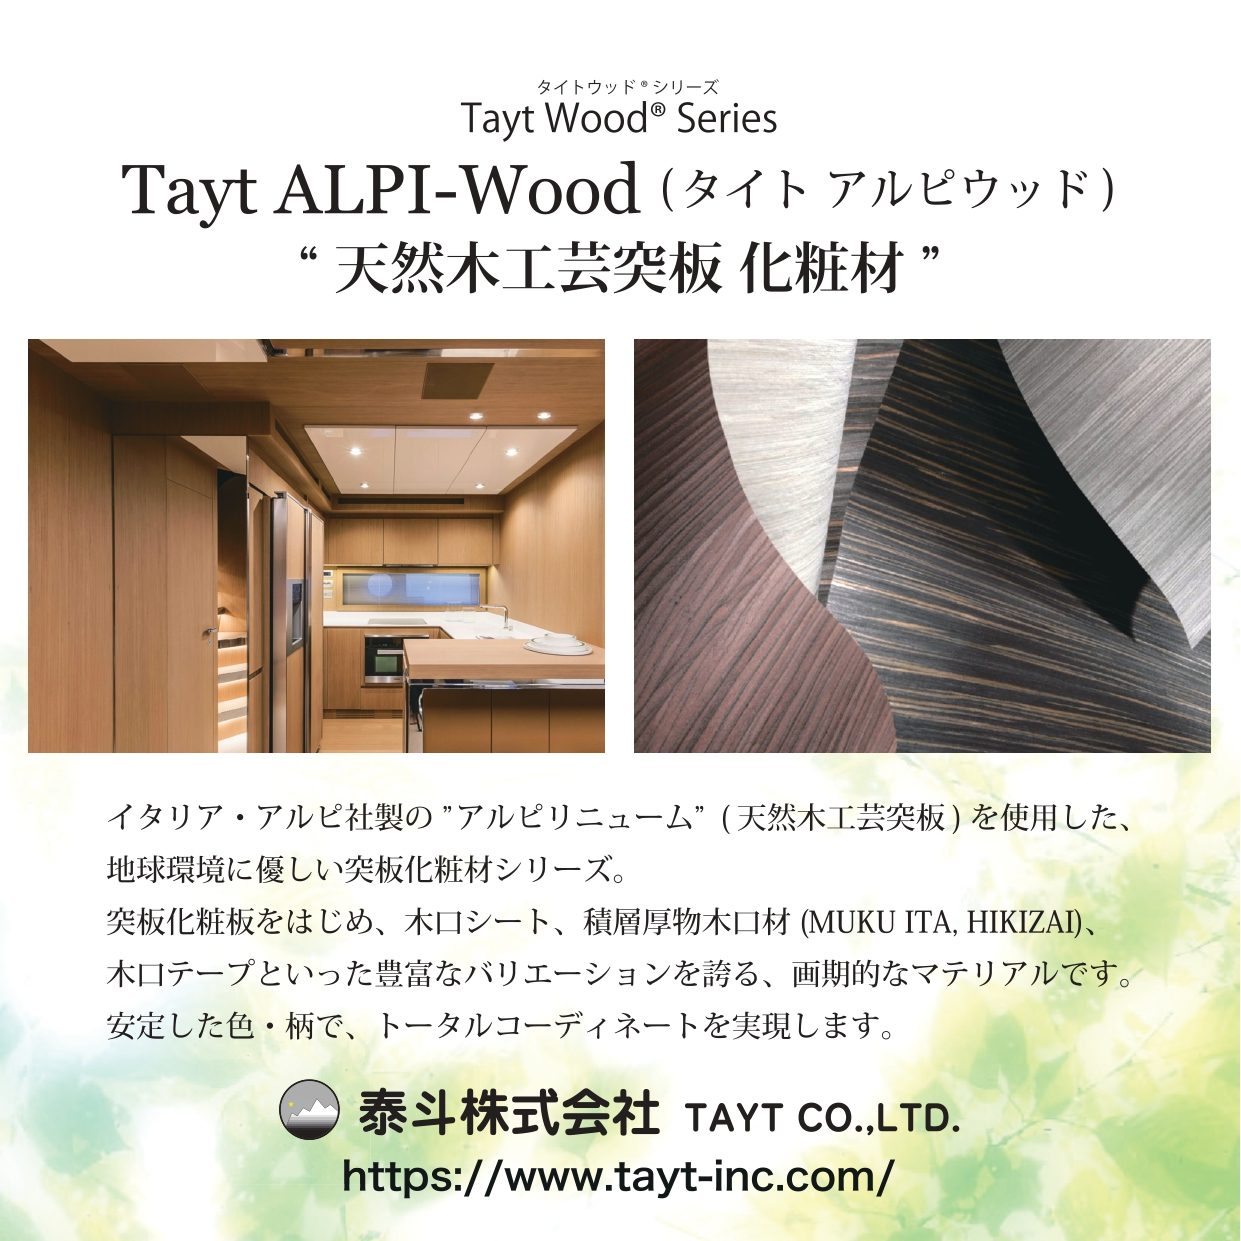 T-1032-0 天然木工芸突板化粧板 タイト アルピウッド イタリアンウォールナット柾 4.0mm×4尺×8尺 クリアー